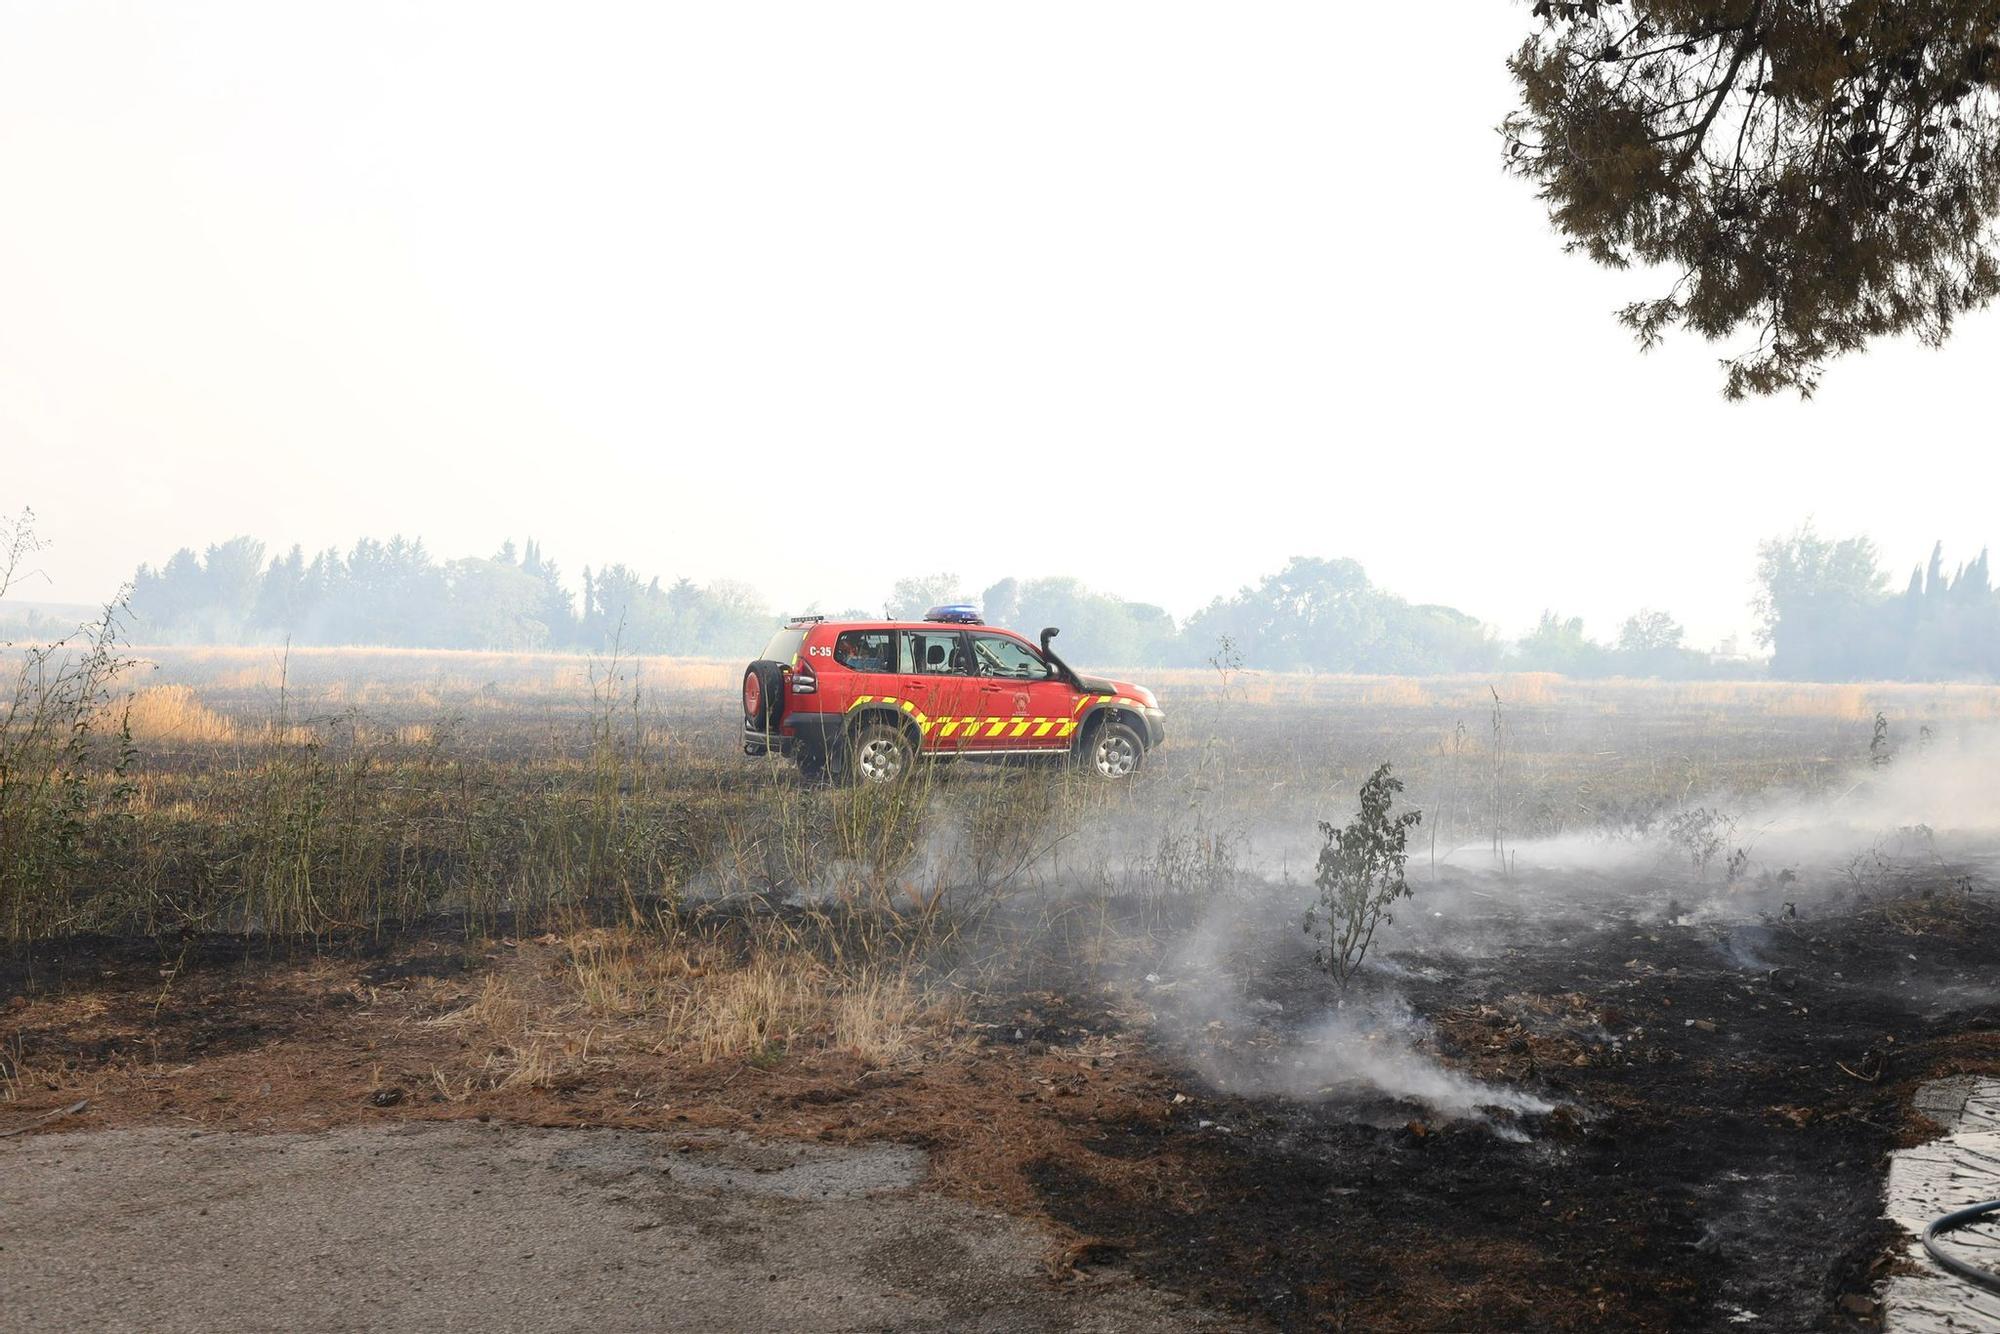 En imágenes | Un incendio a las afueras de Zaragoza obliga a evacuar una residencia